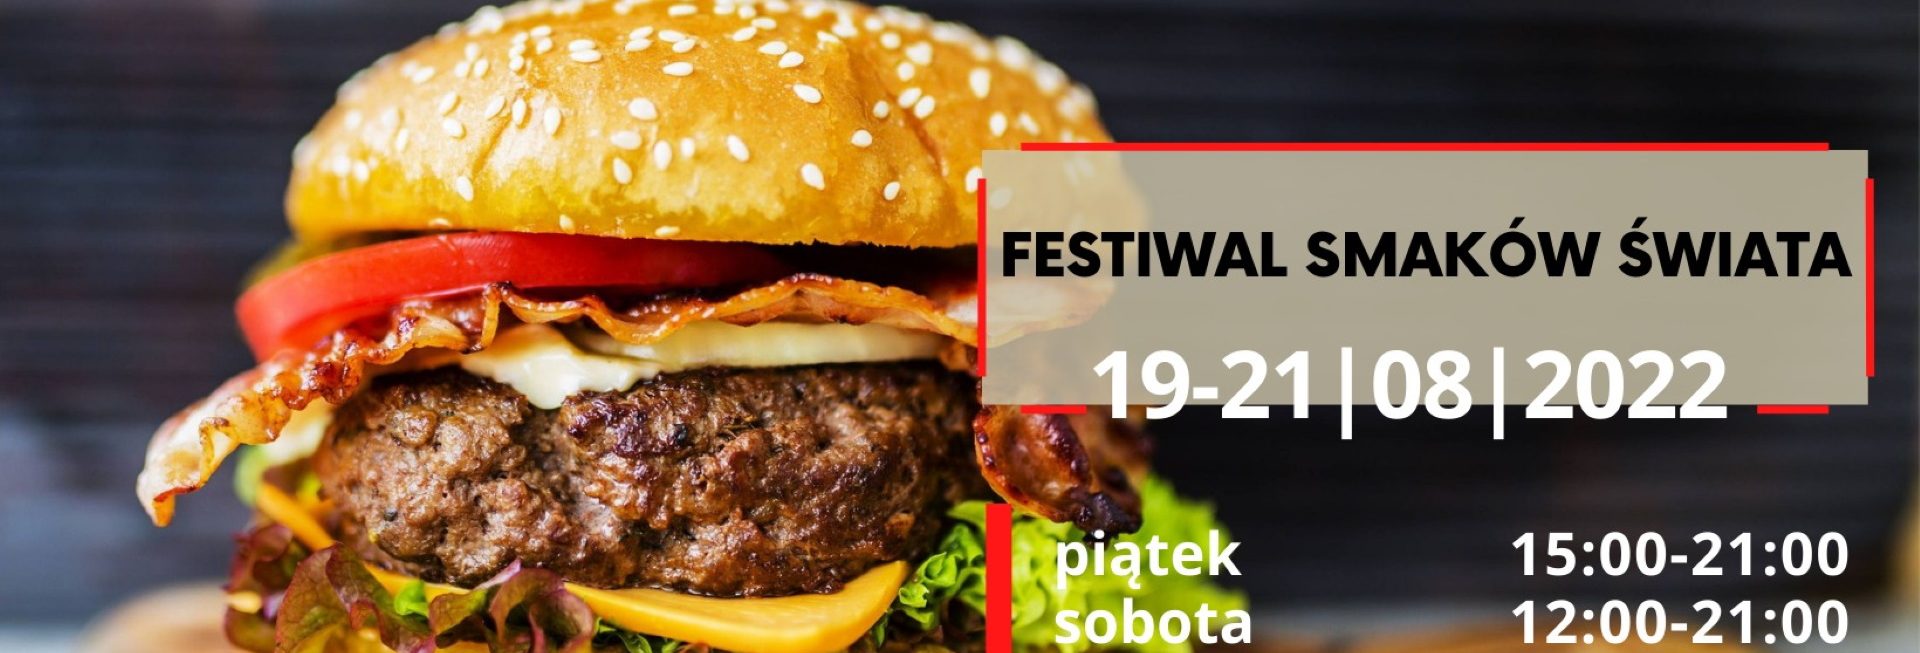 Plakat zapraszający do Szczytna na Festiwal Smaków Świata Szczytno 2022.